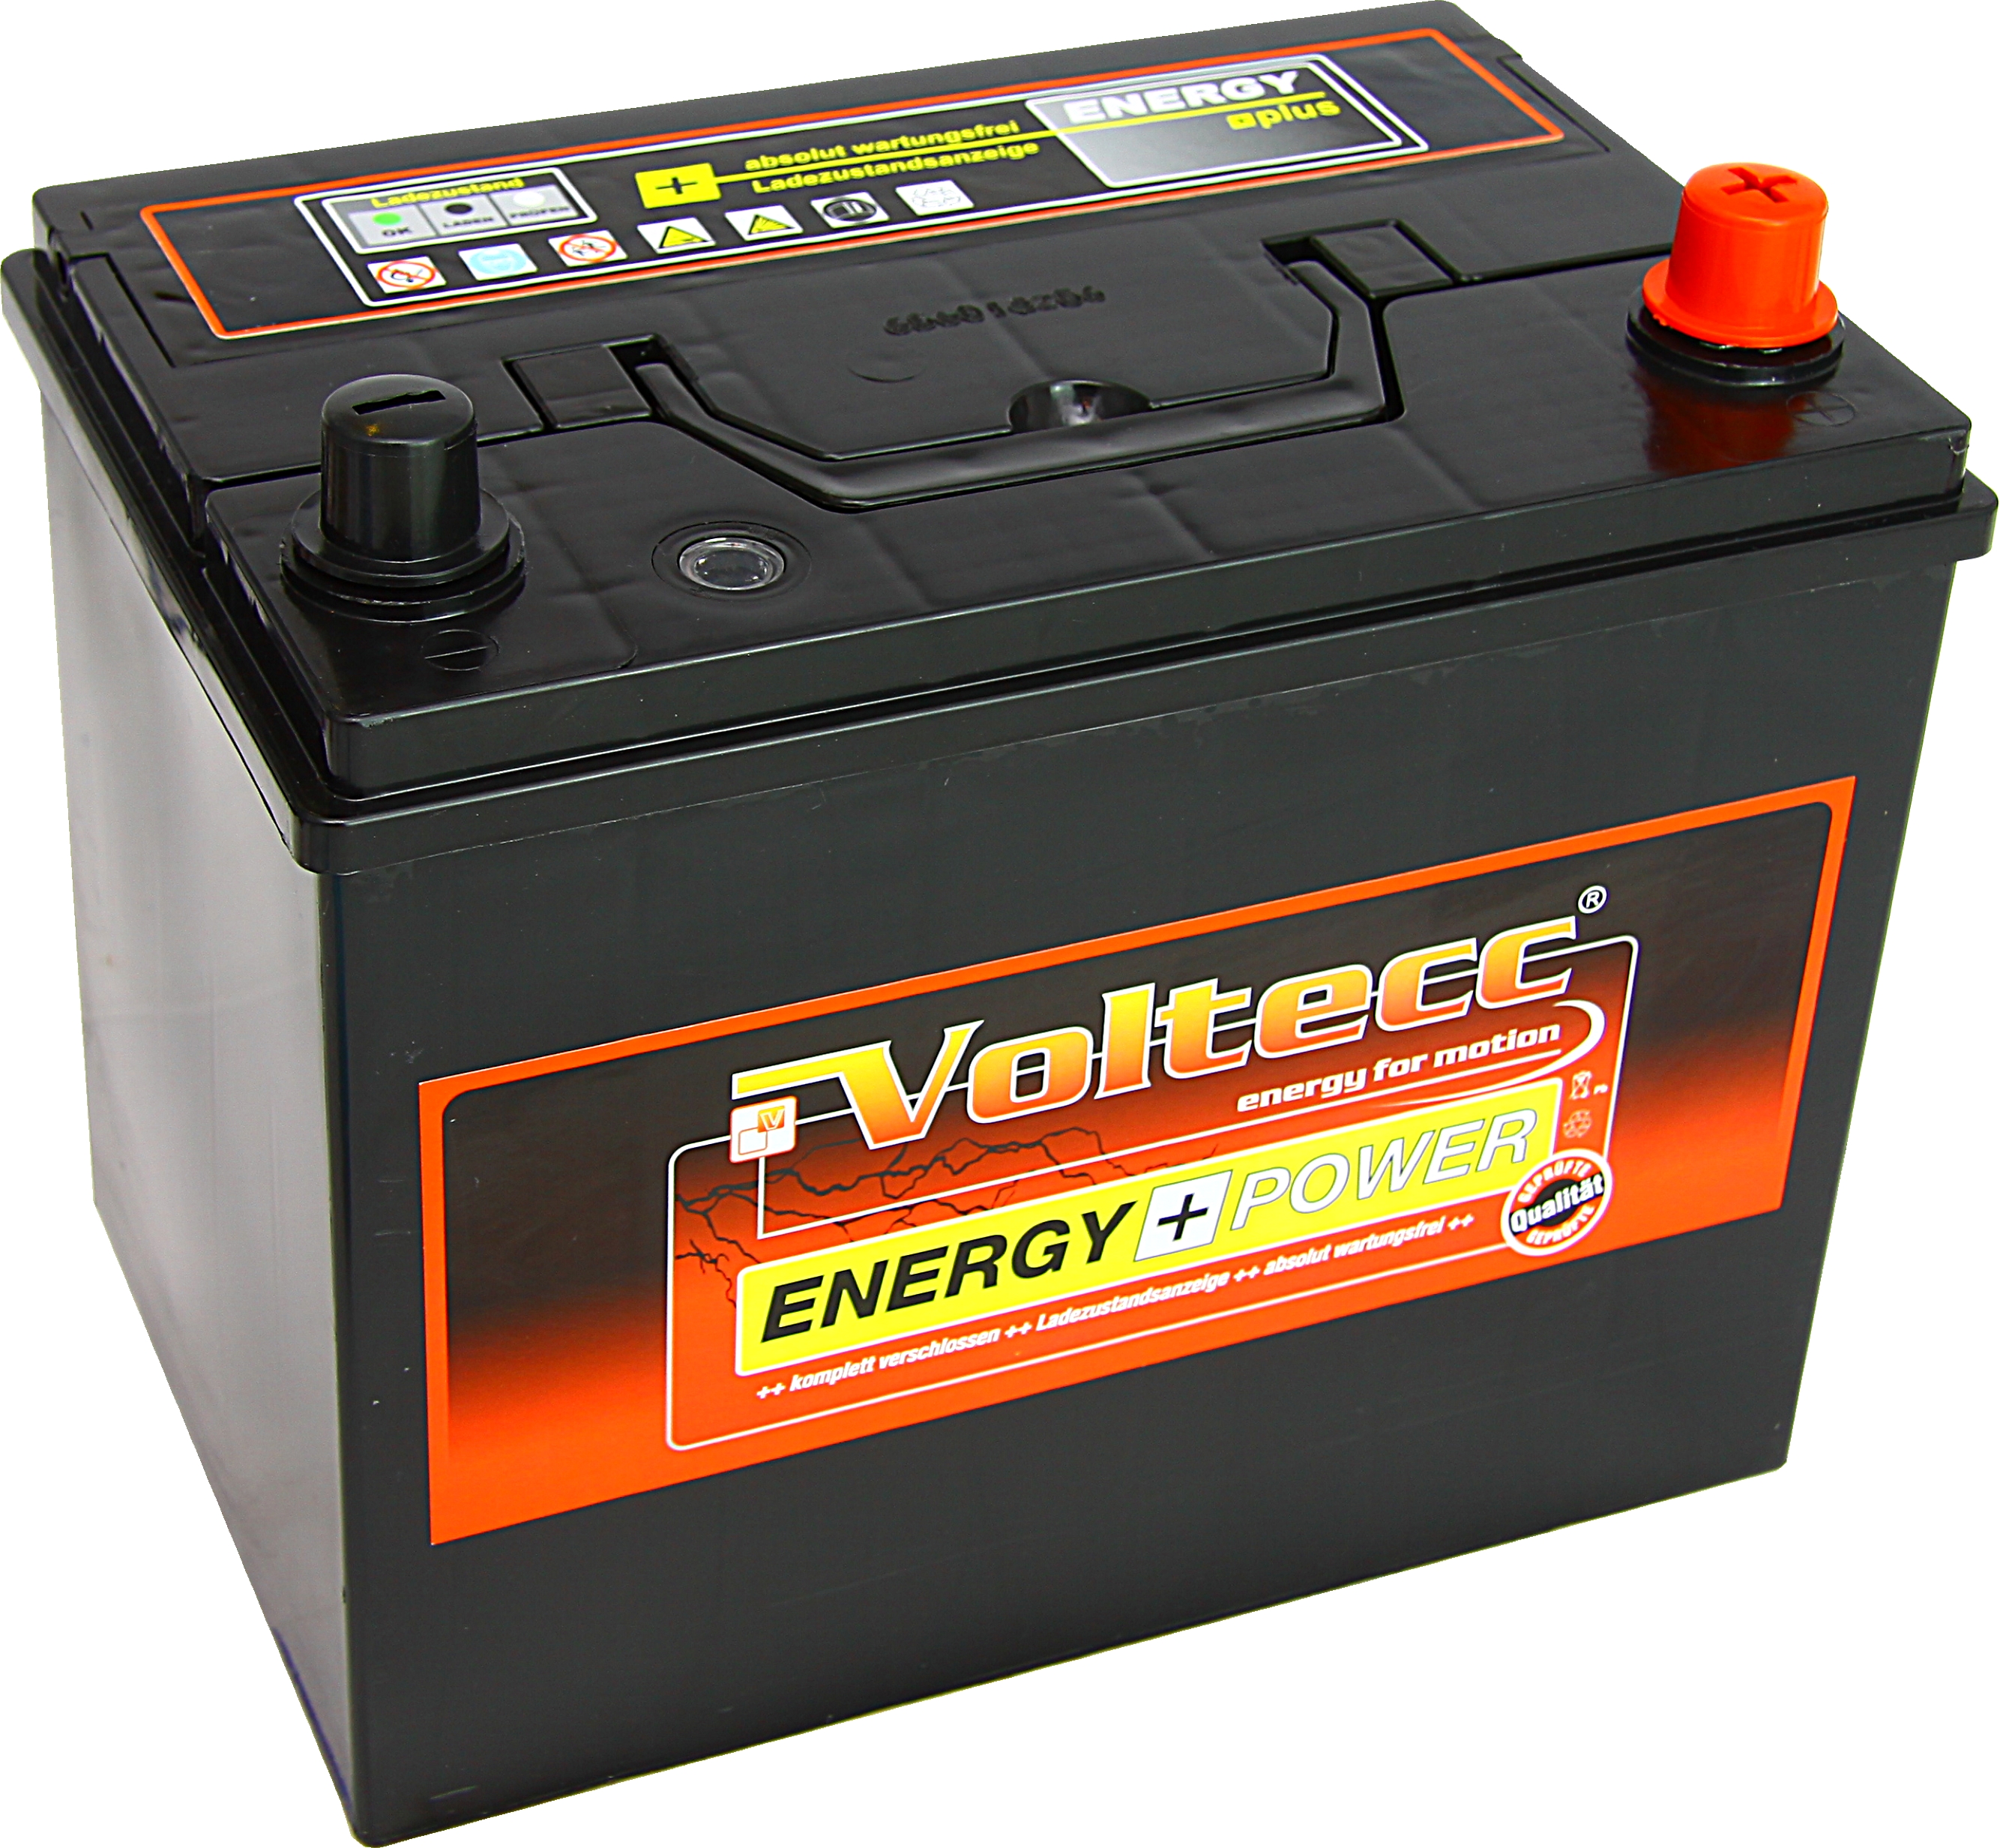 Voltecc Energy Asia 57029 12V 70Ah 540A